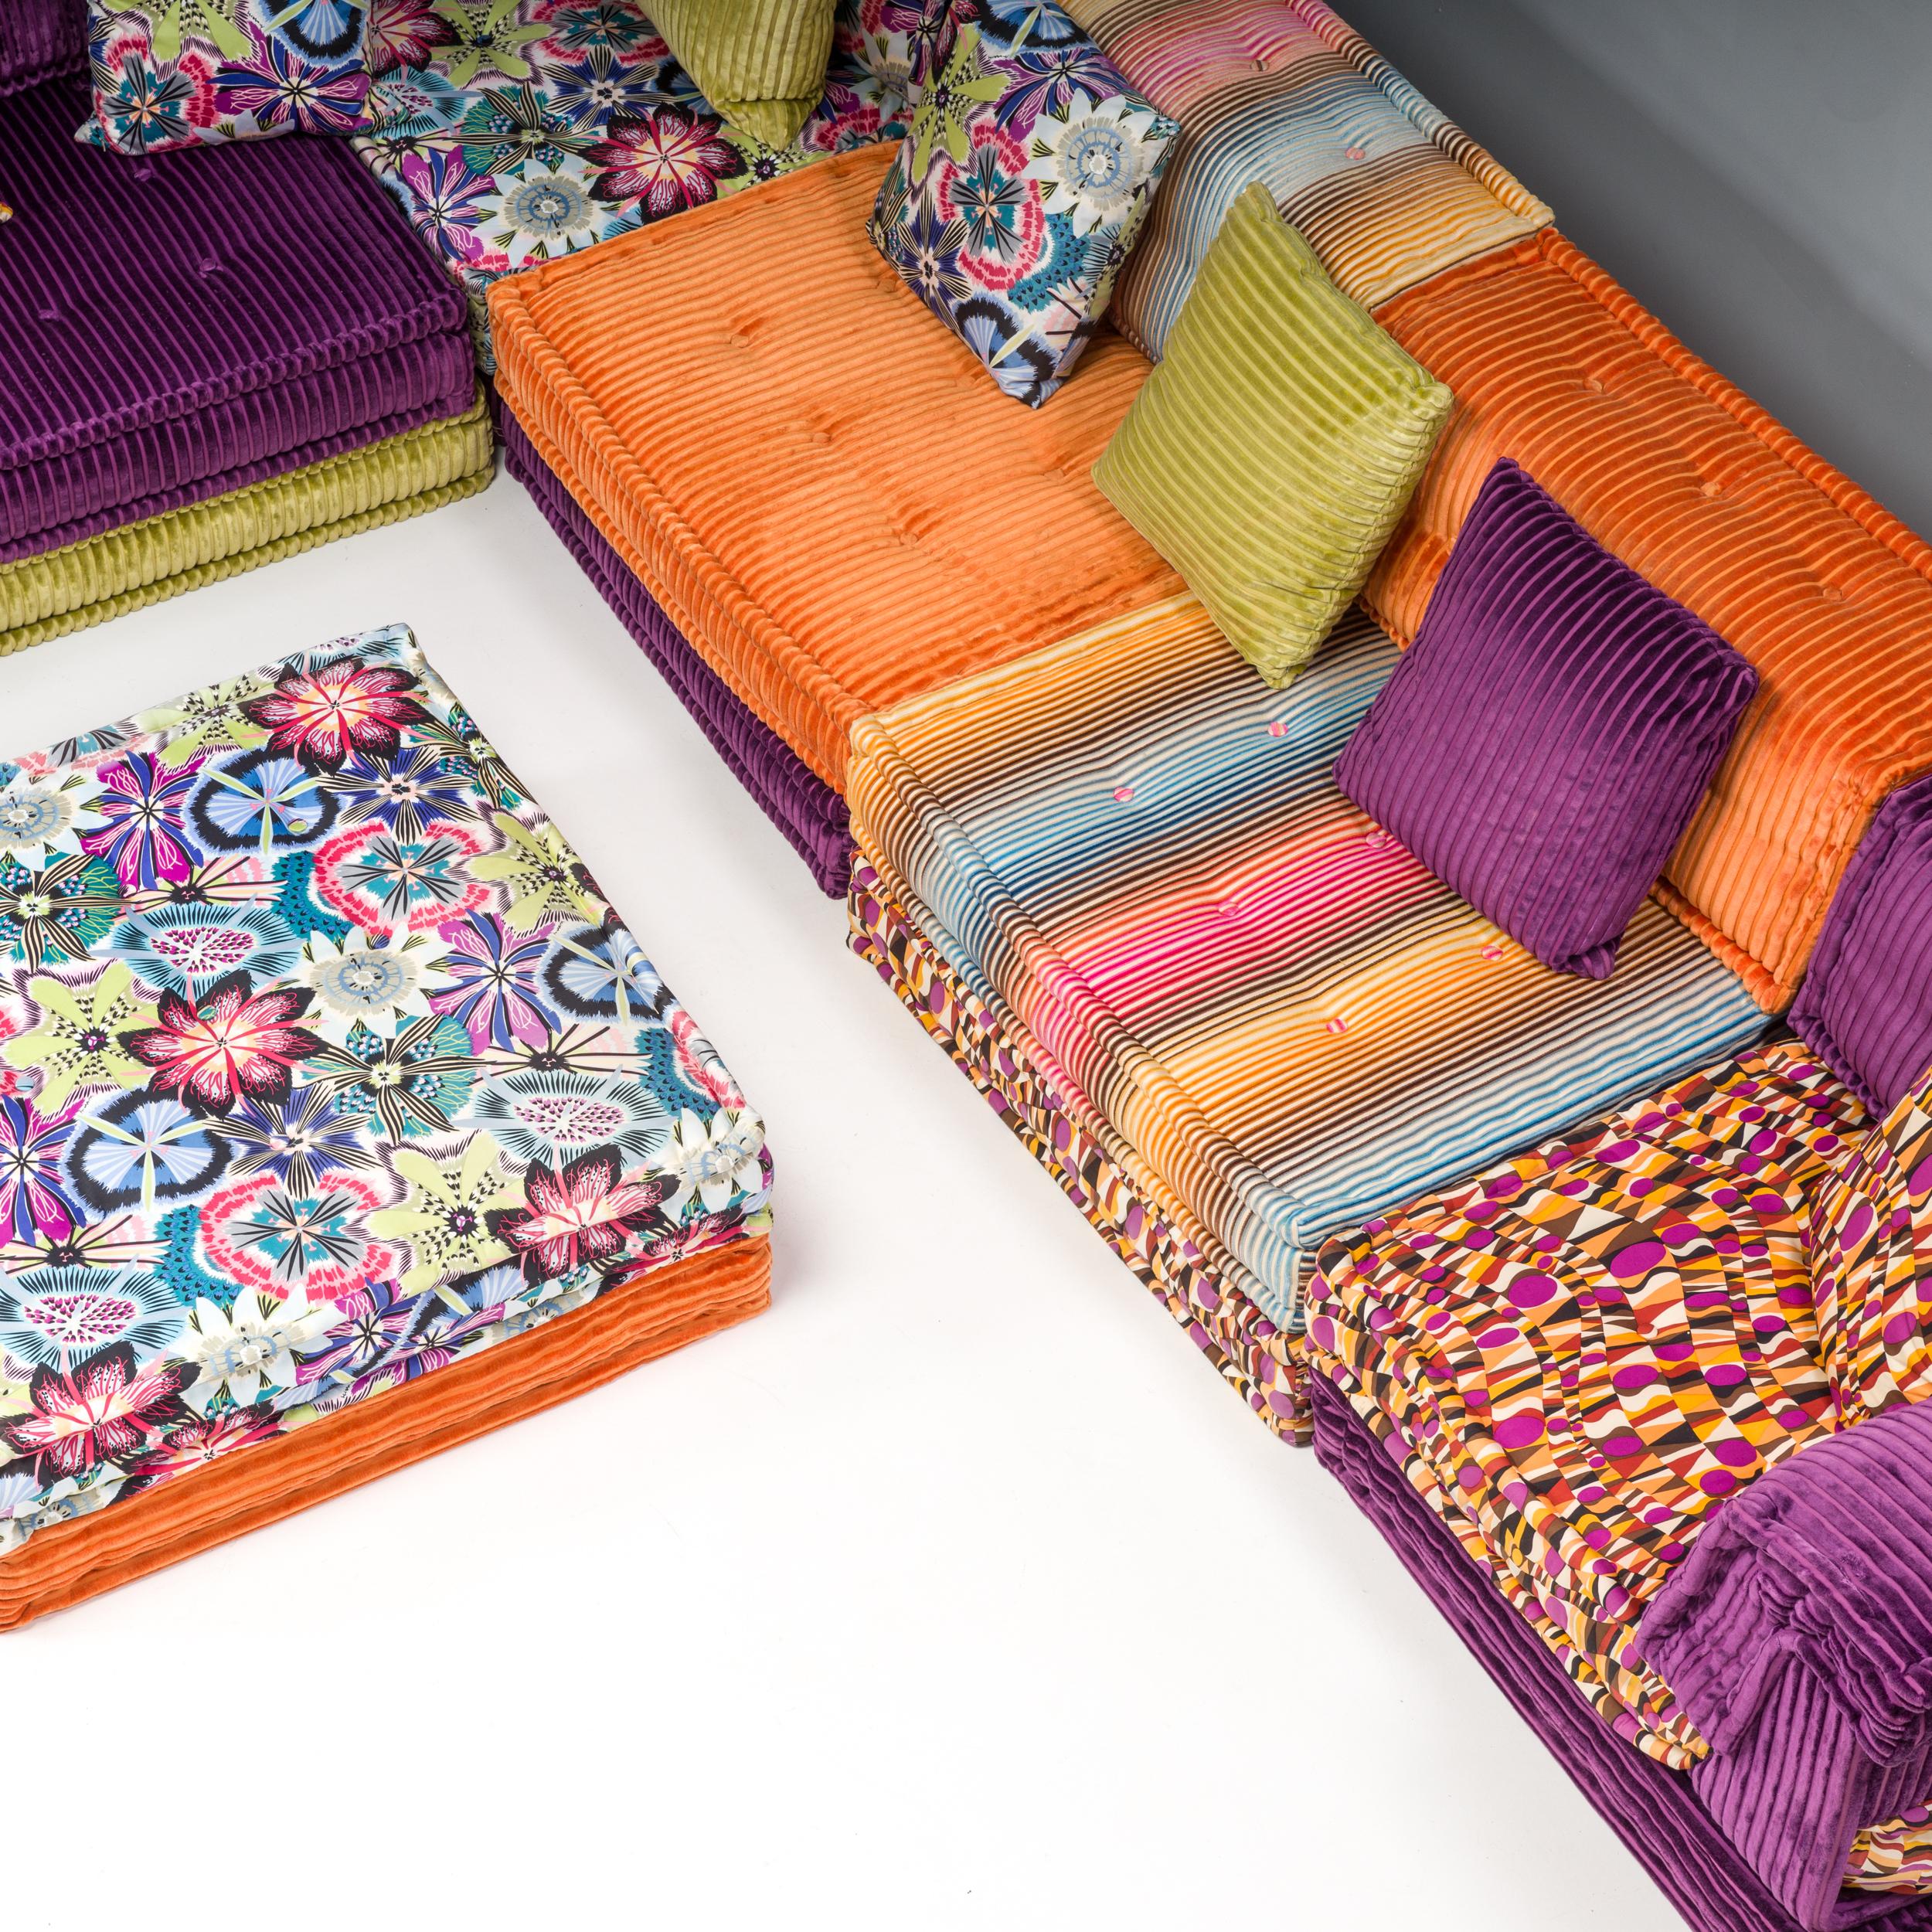 Roche Bobois Mah Jong Sectional Sofa in Custom Upholstery, Set of 20 For Sale 1